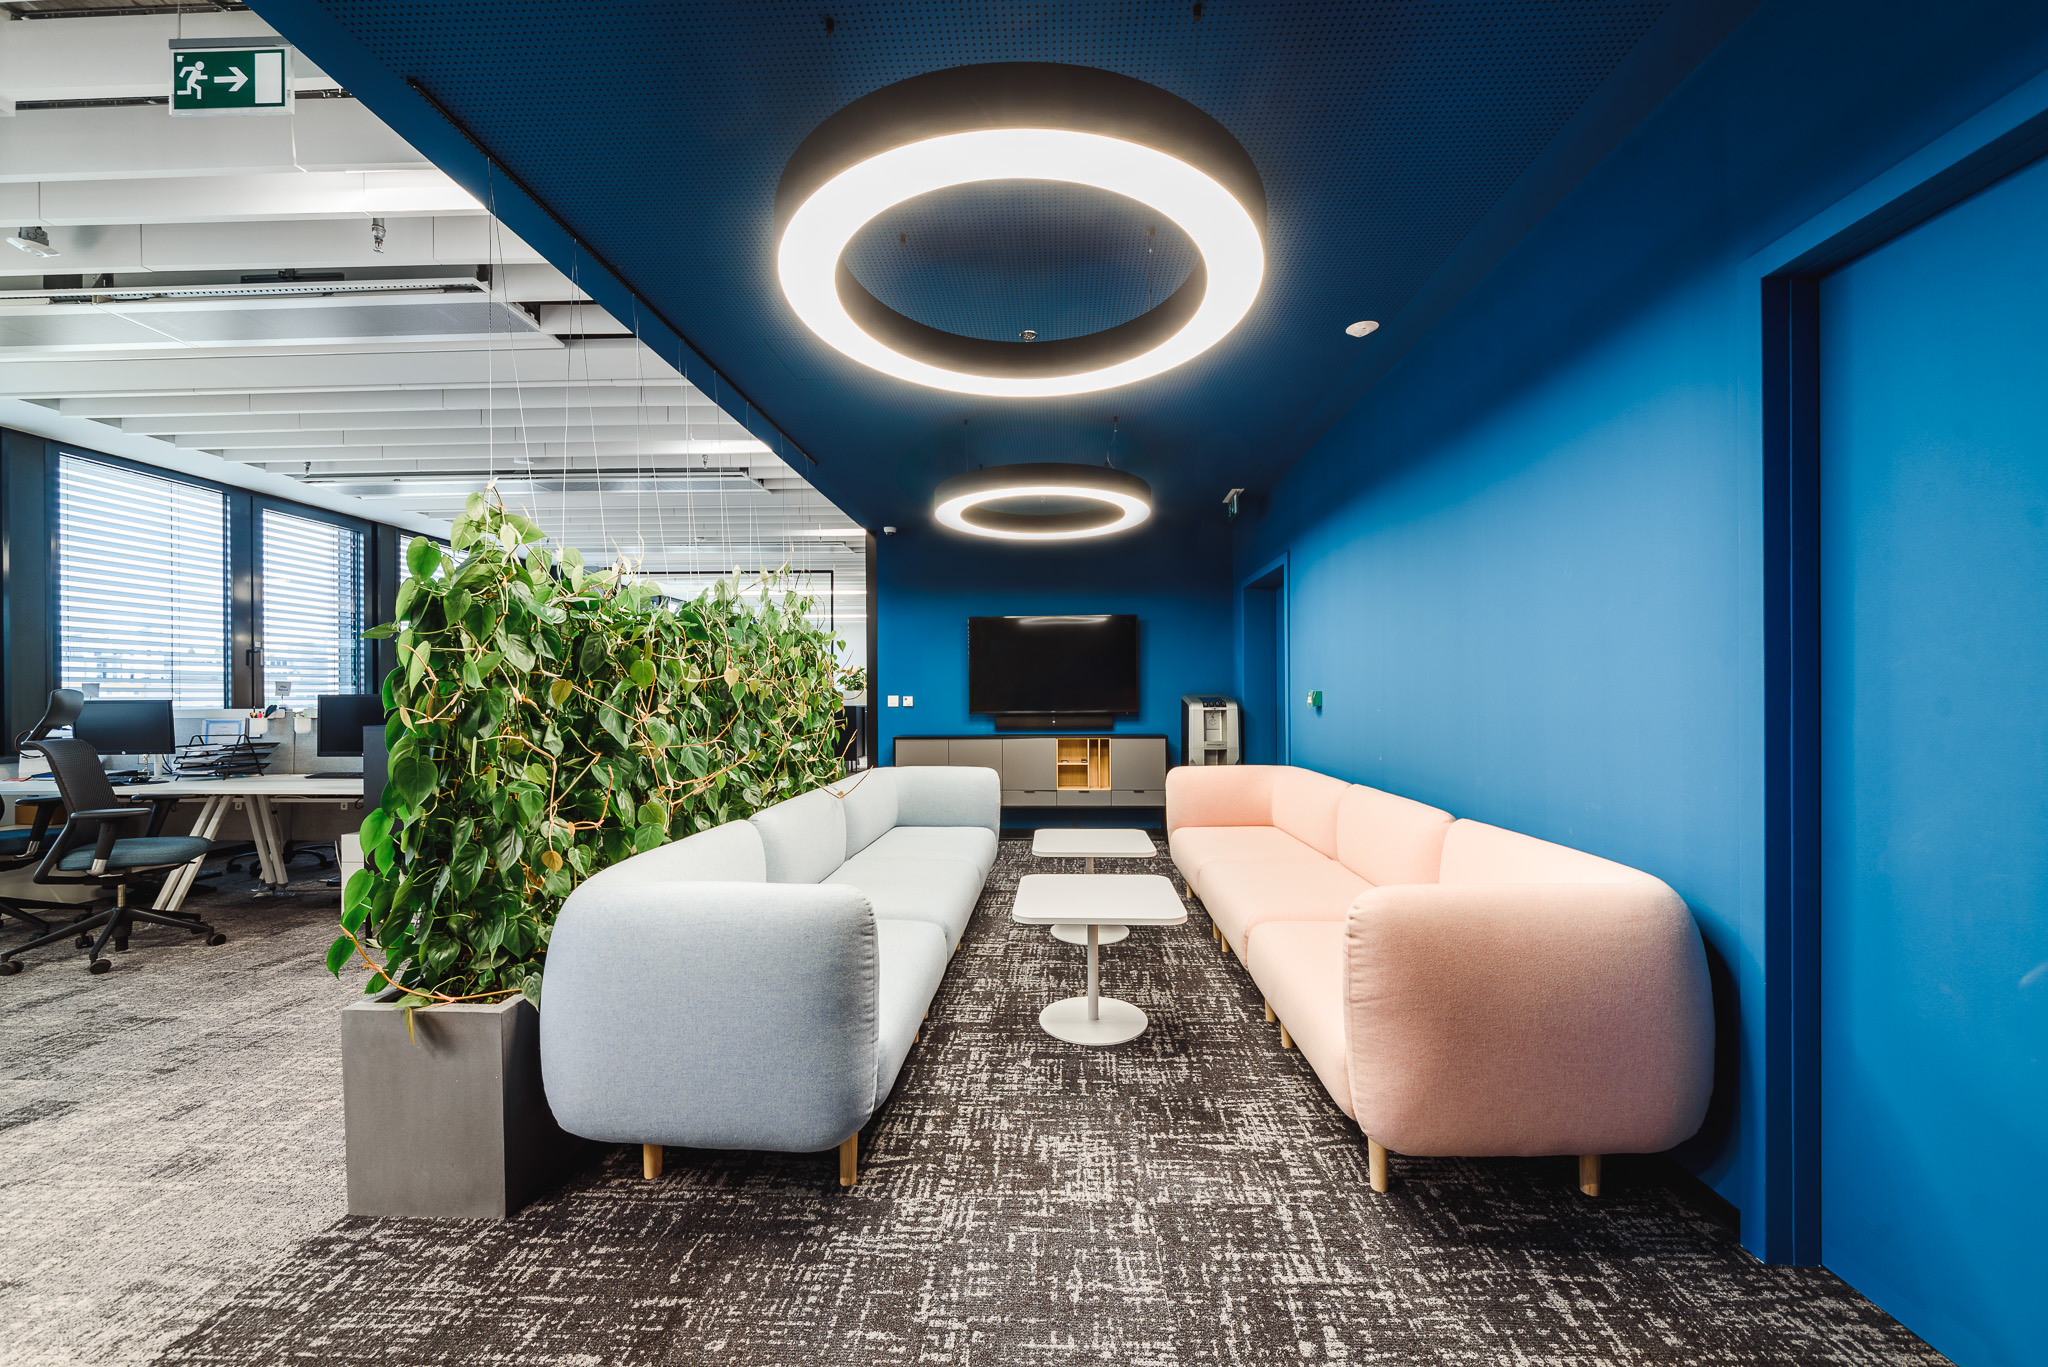 sedacia suprava a konferecne stoliky v modernom modrom interiery v kancelarskych priestoroch roche 